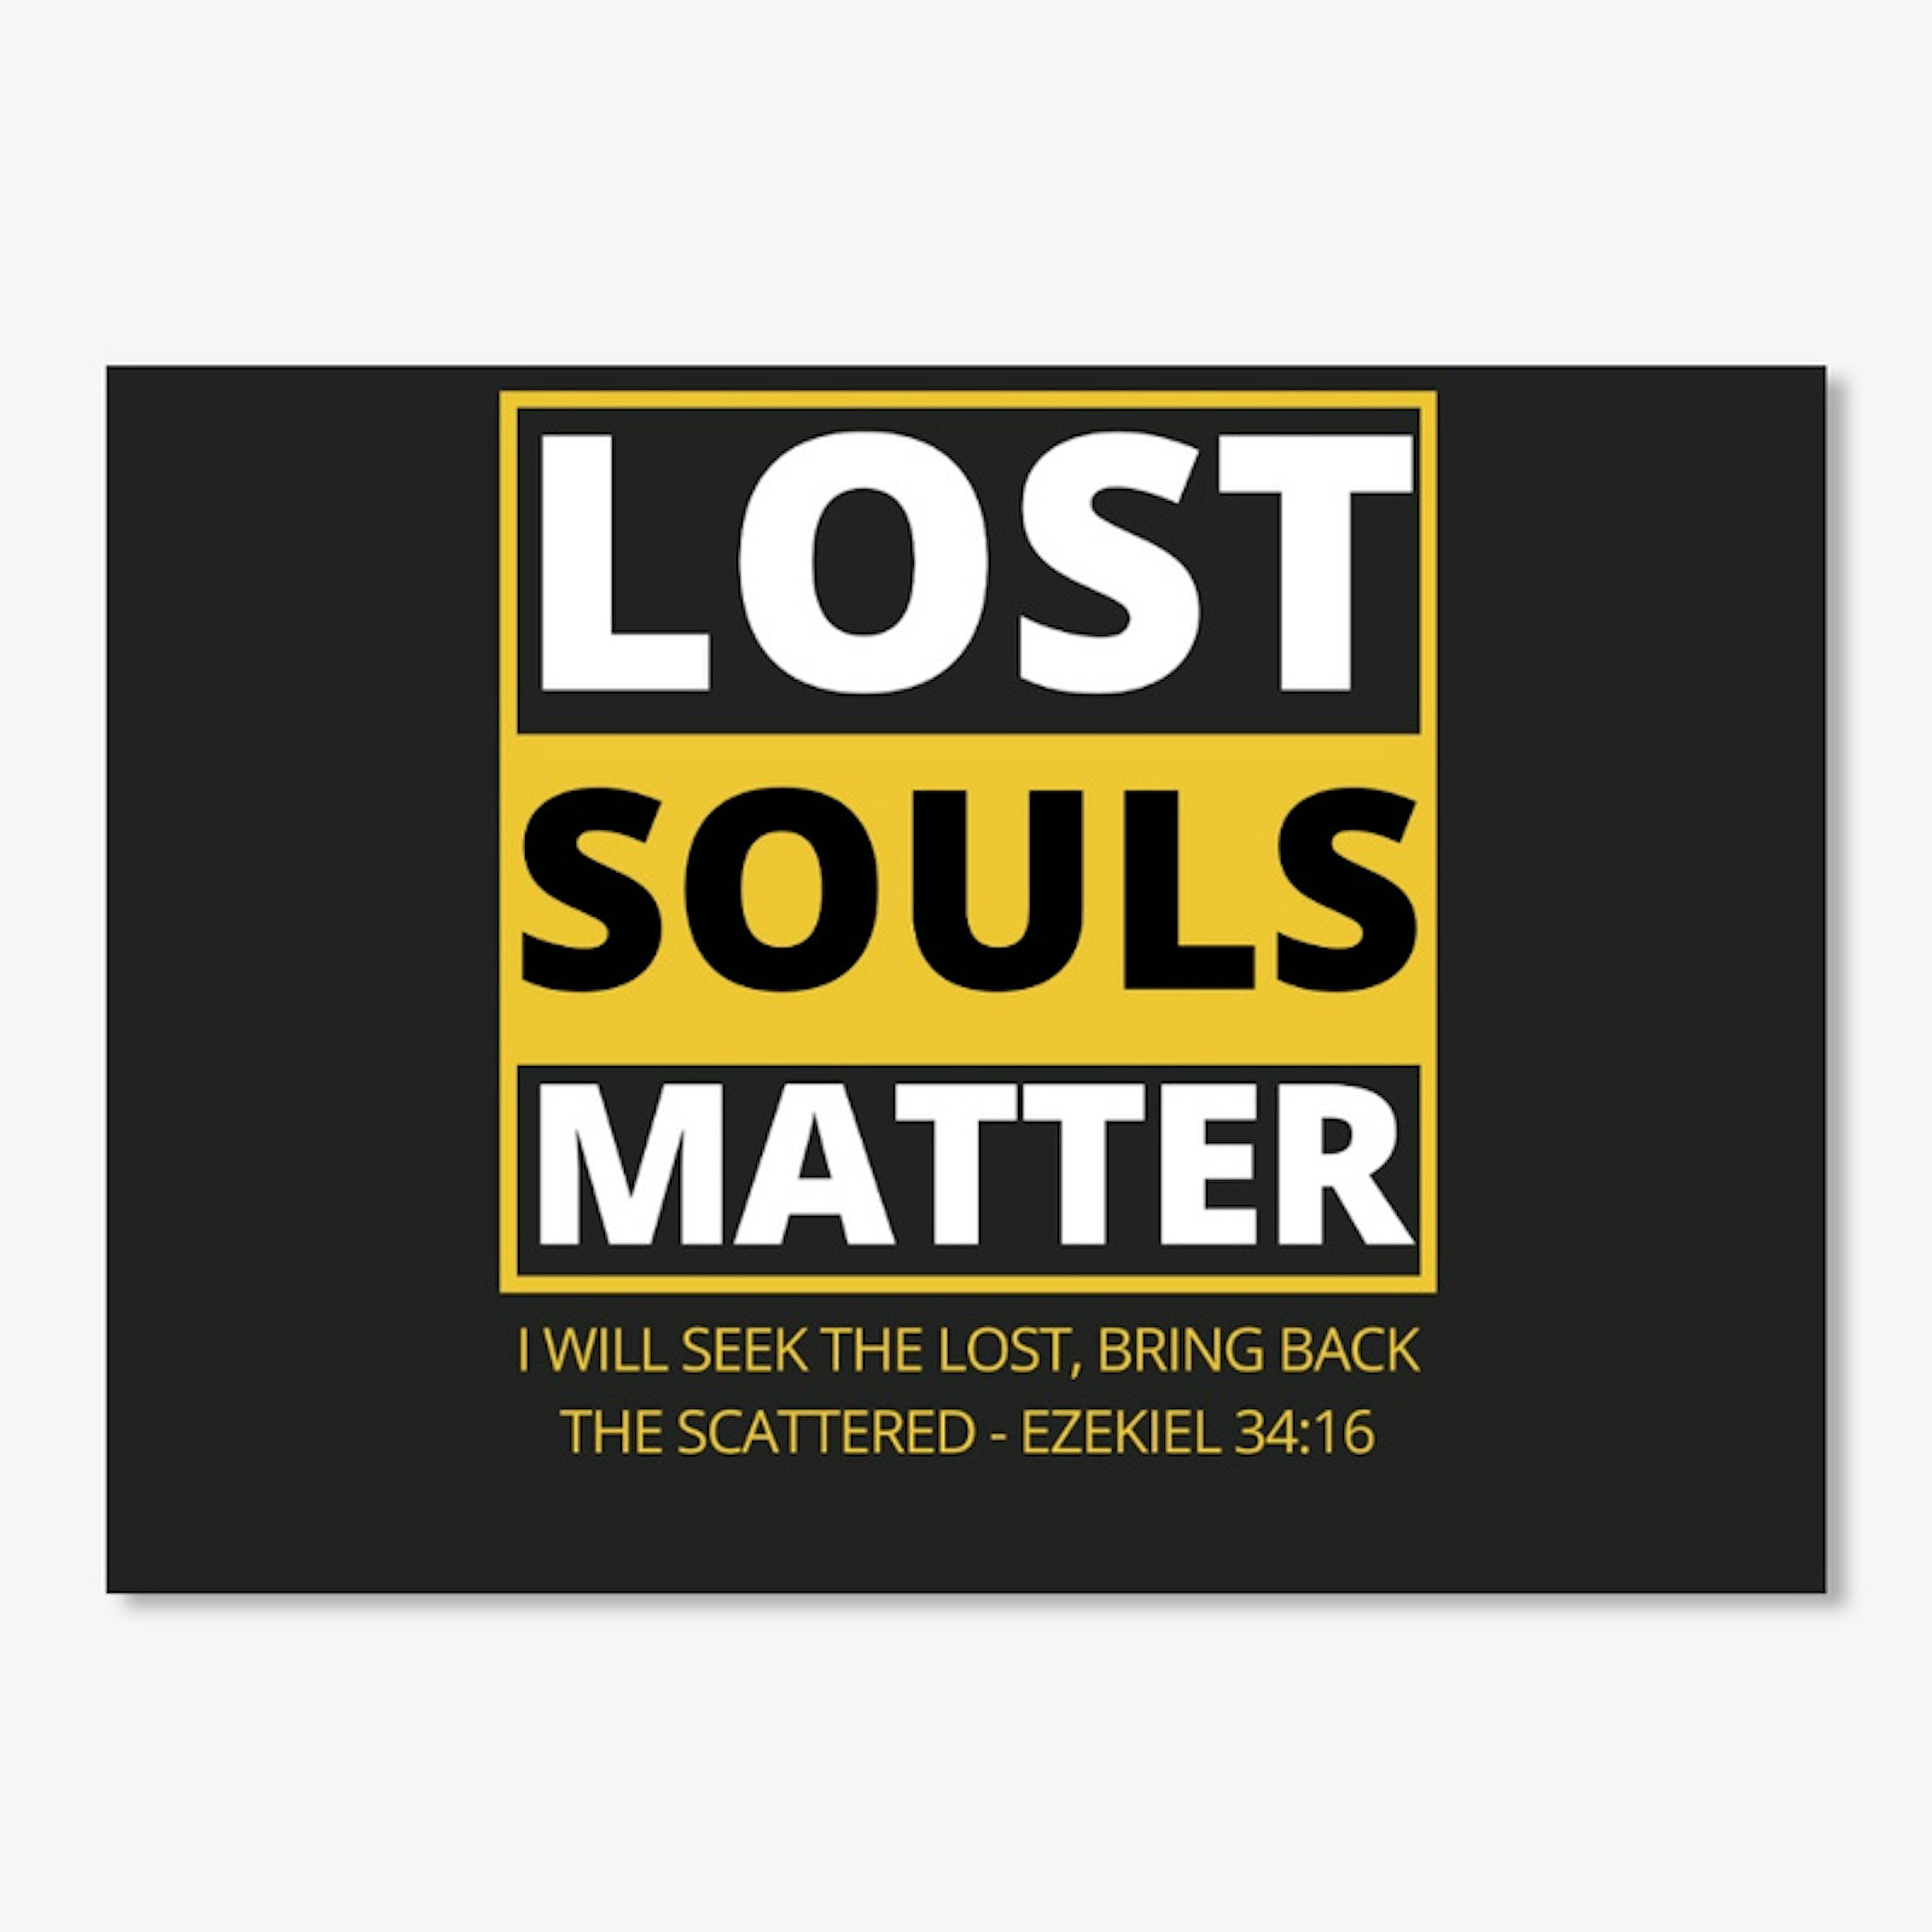 00031: Stylish Lost Souls Matter